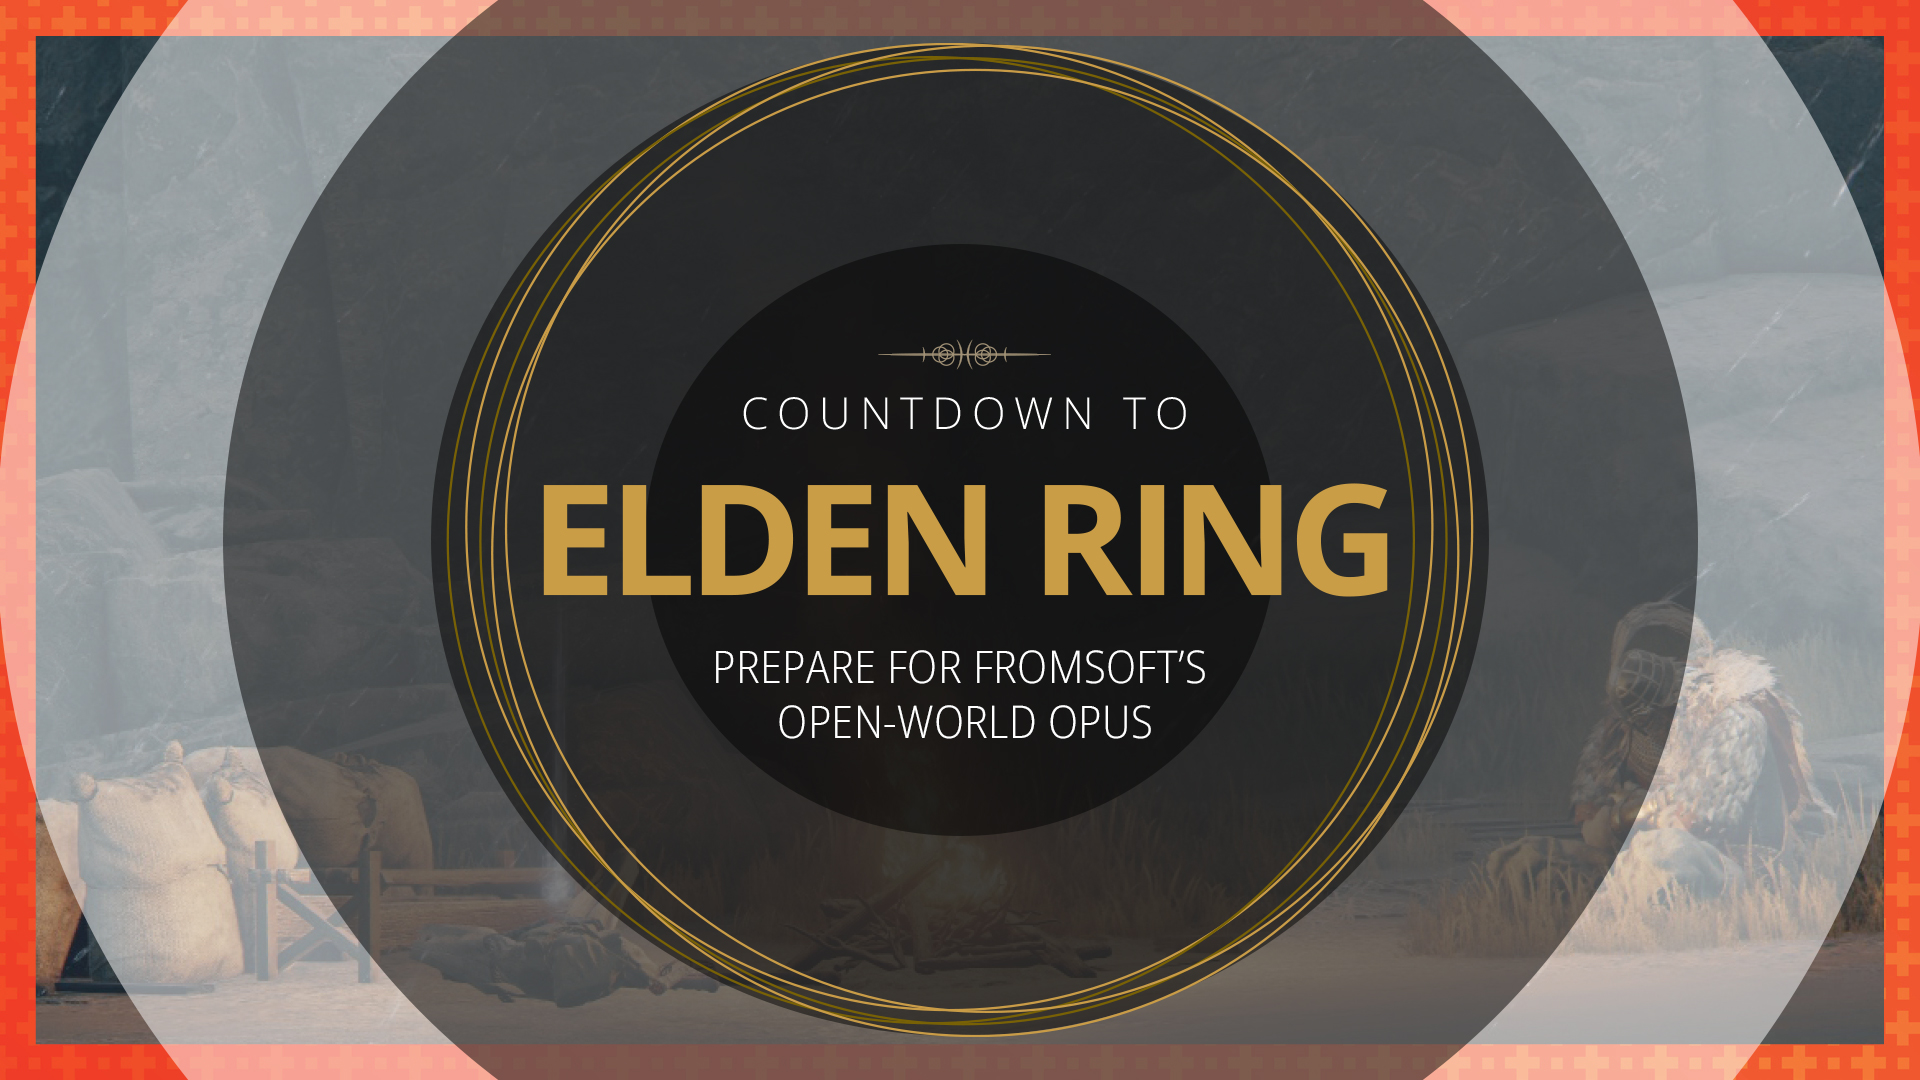 Countdown to Elden Ring